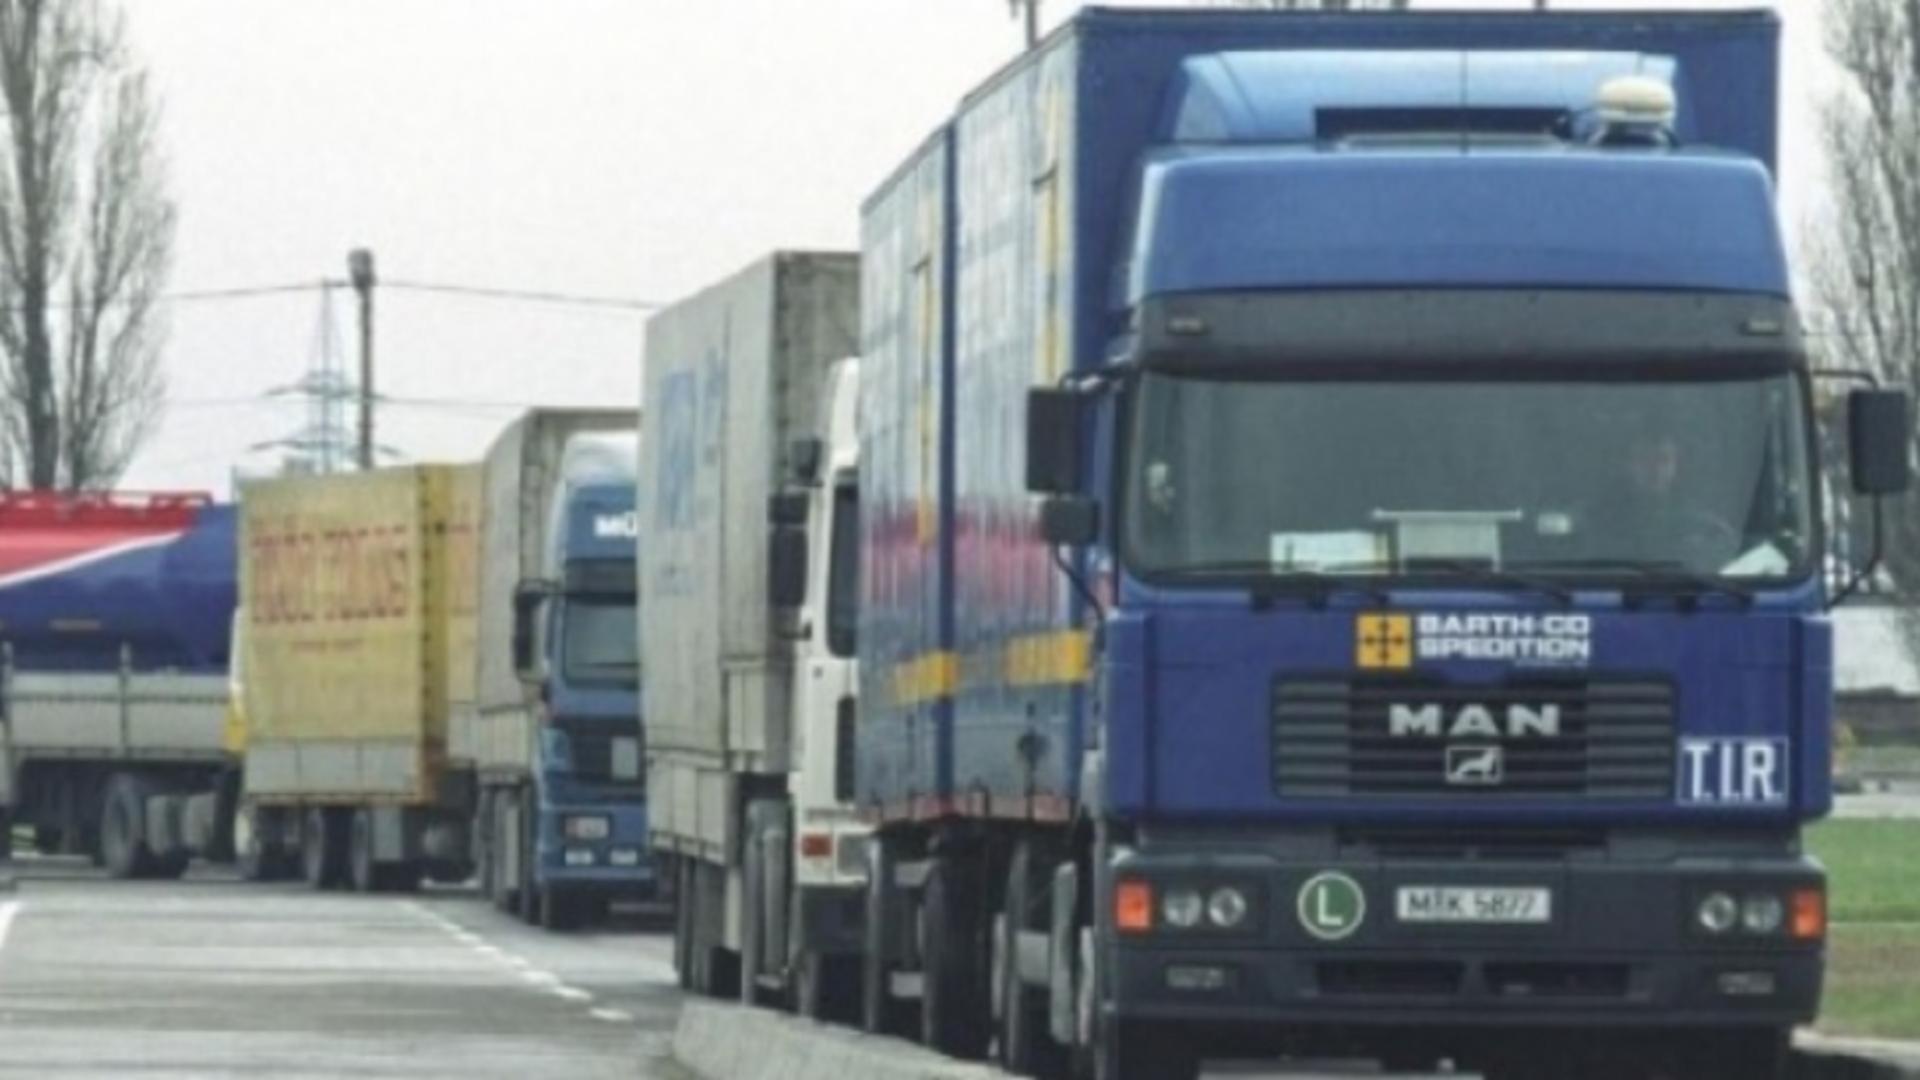 Şofer român, prins cu 16 kg de cocaină în camion, în Franța